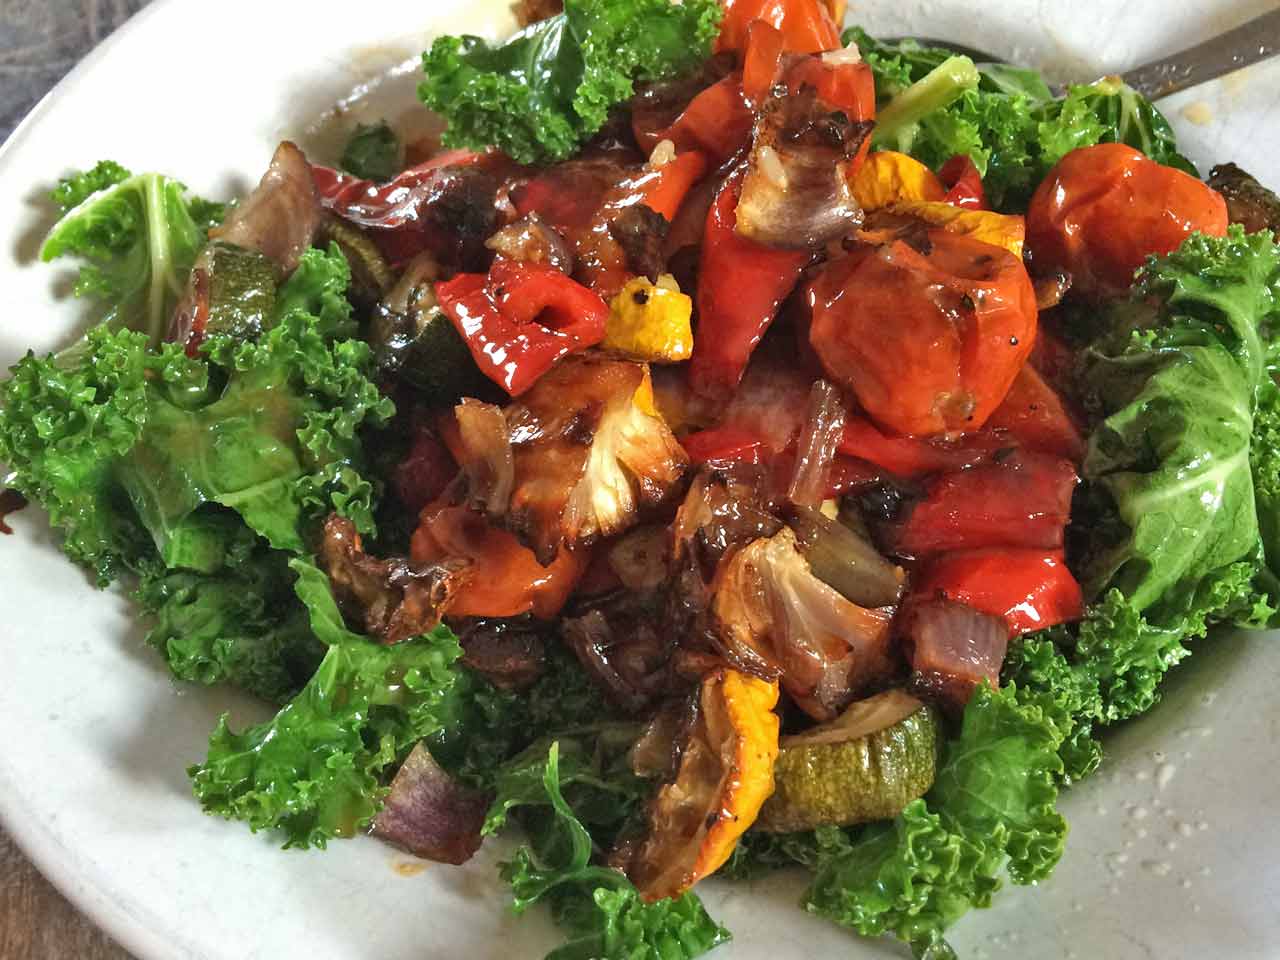 Stir fried kale with vegetables